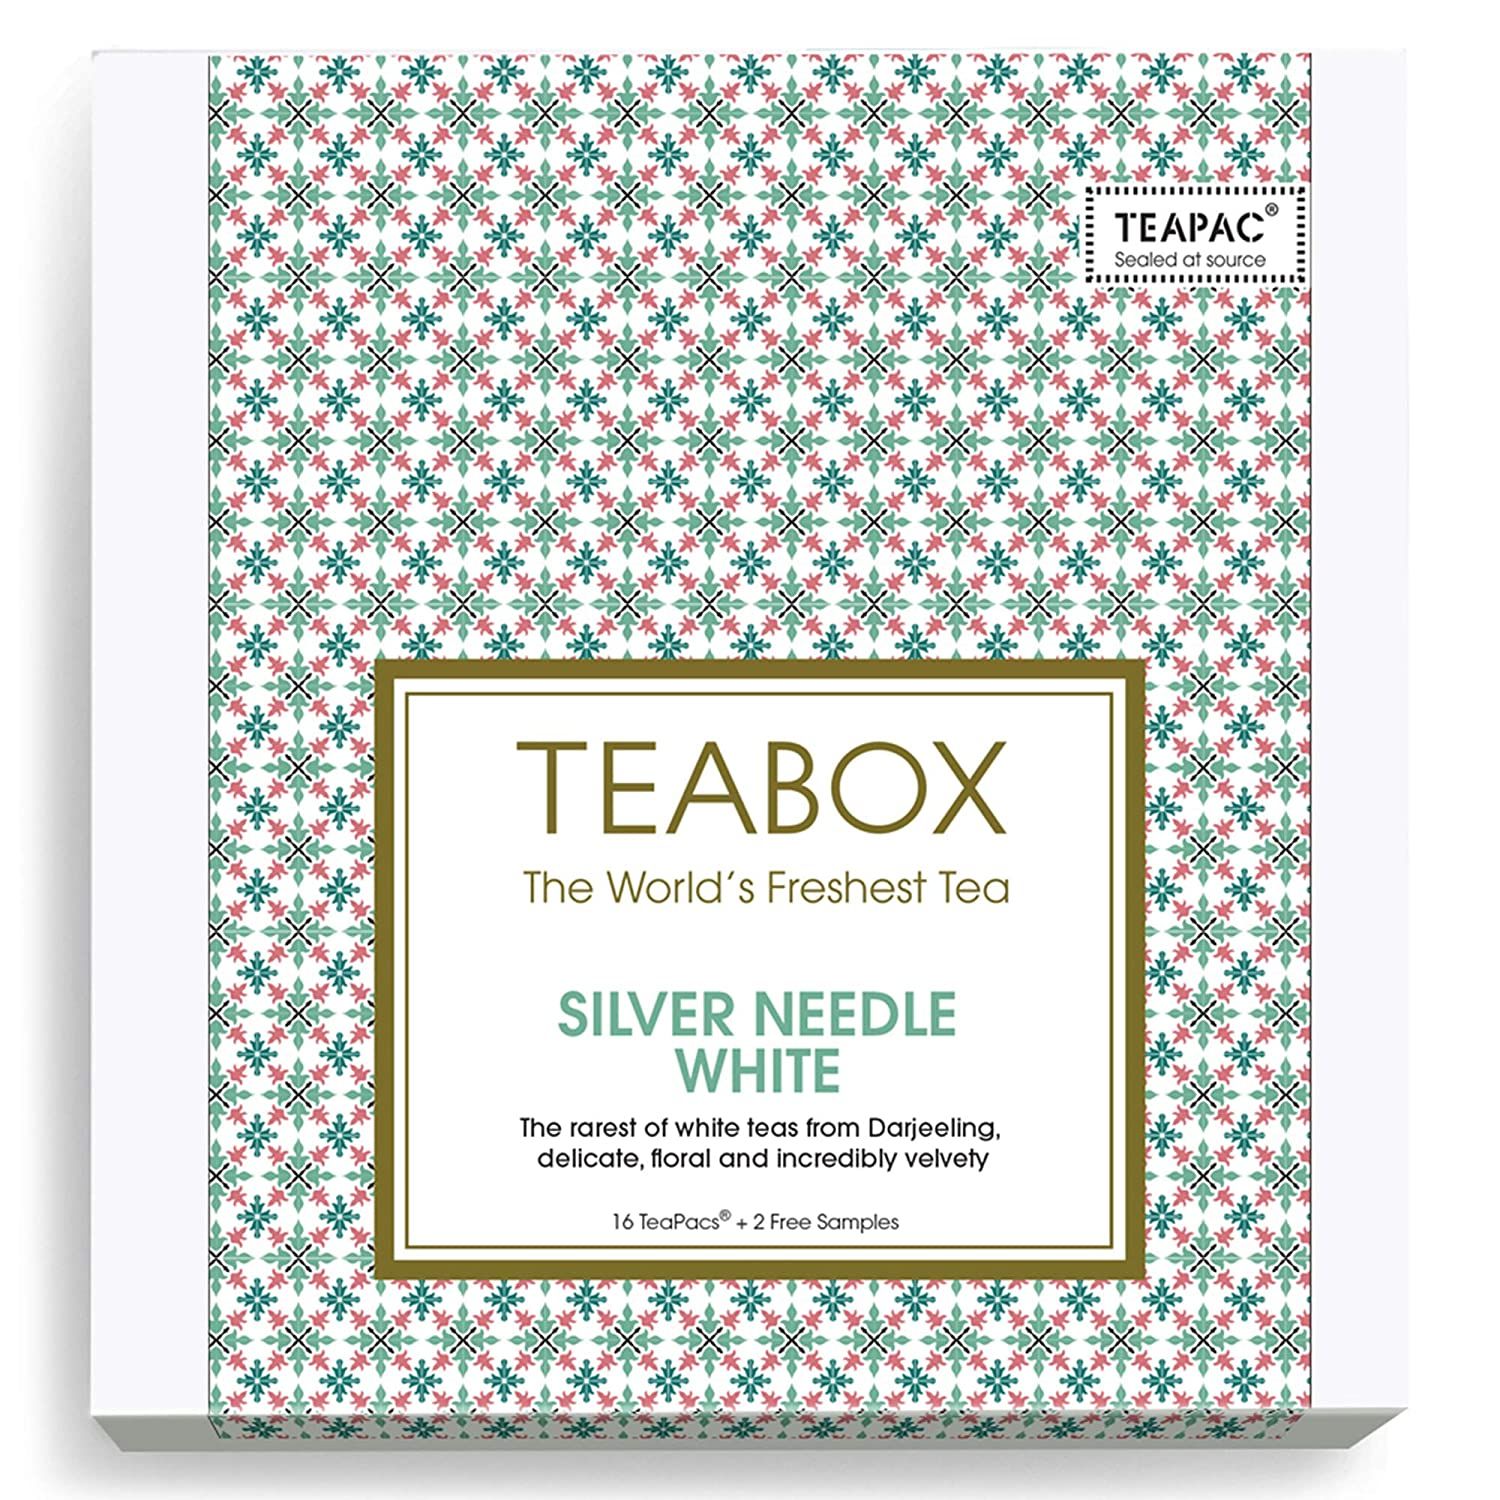 Teabox Silver Needle White Tea Image